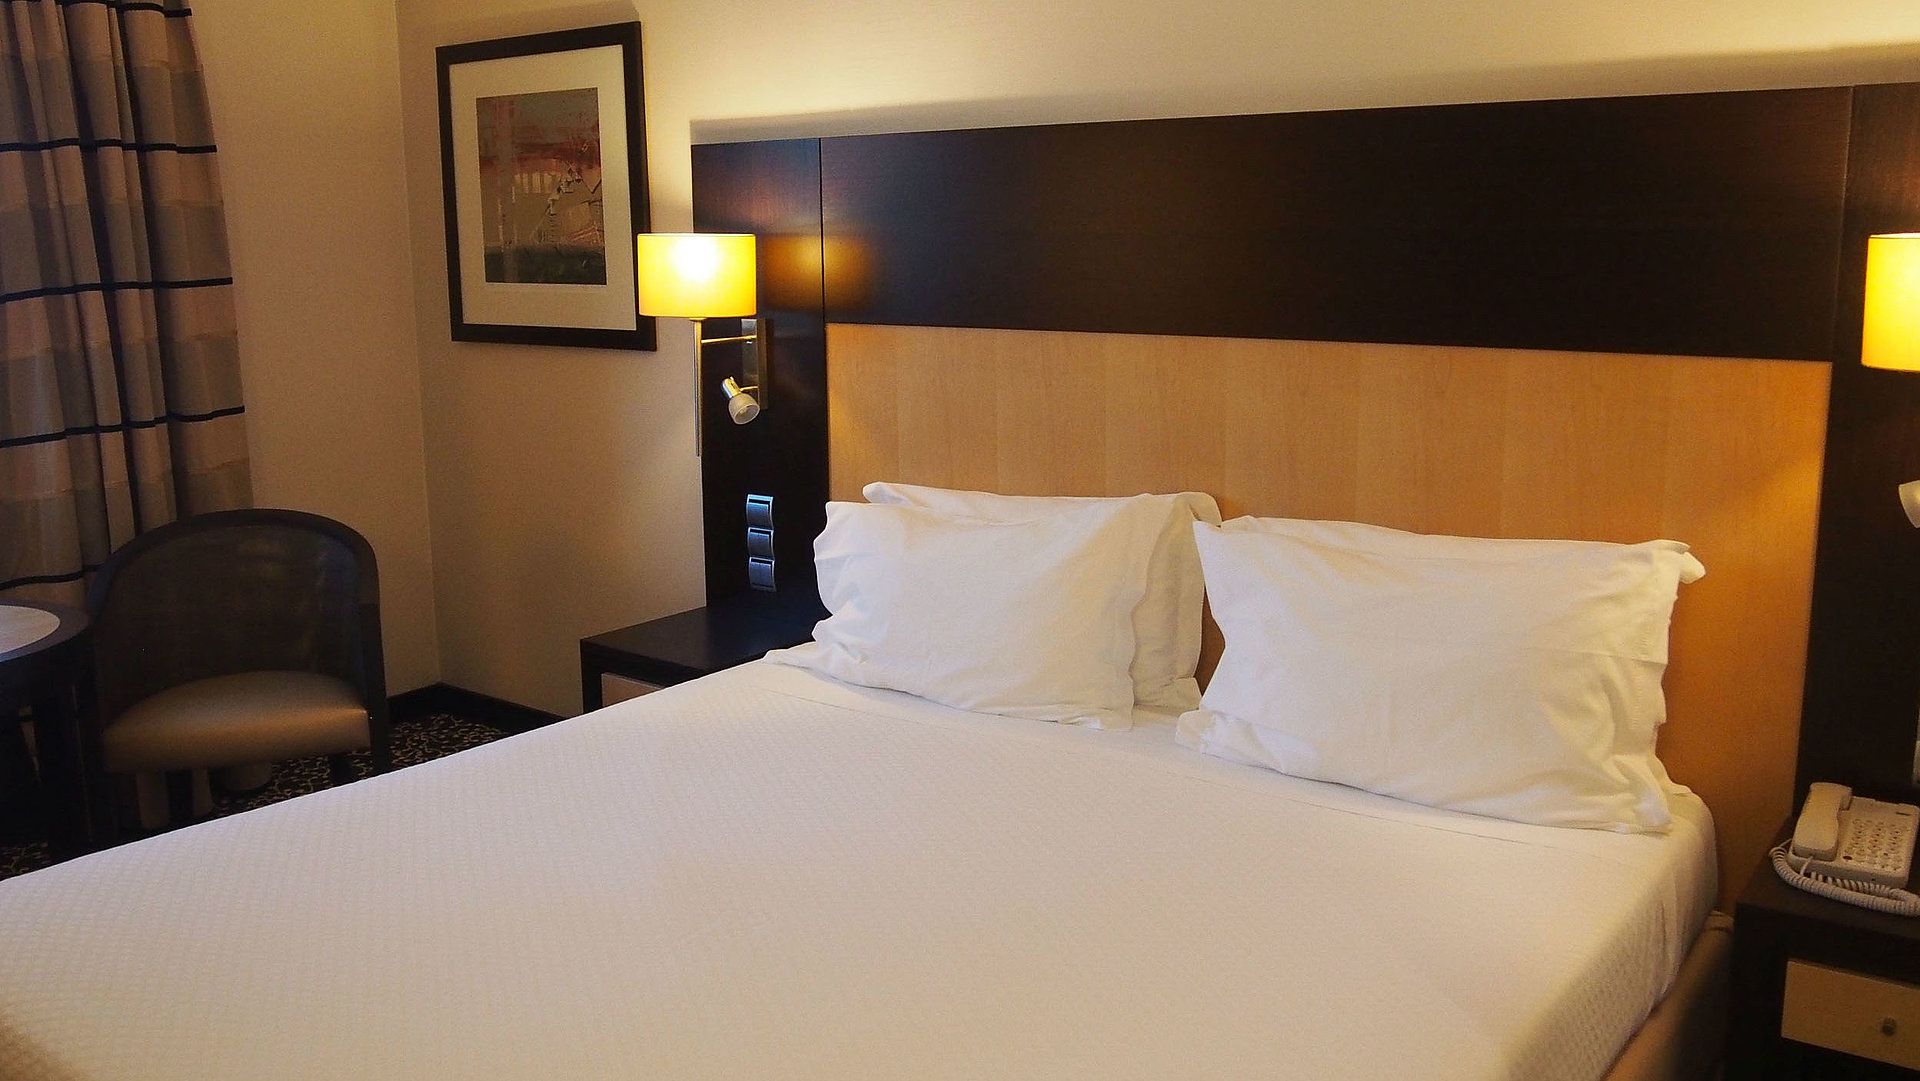 Behindertengerechte Unterkunft in Franken - sehr ordentliches Hotelzimmer mit großem Bett, warmer Nachtlampe und mittelgroßem Wandgemälde